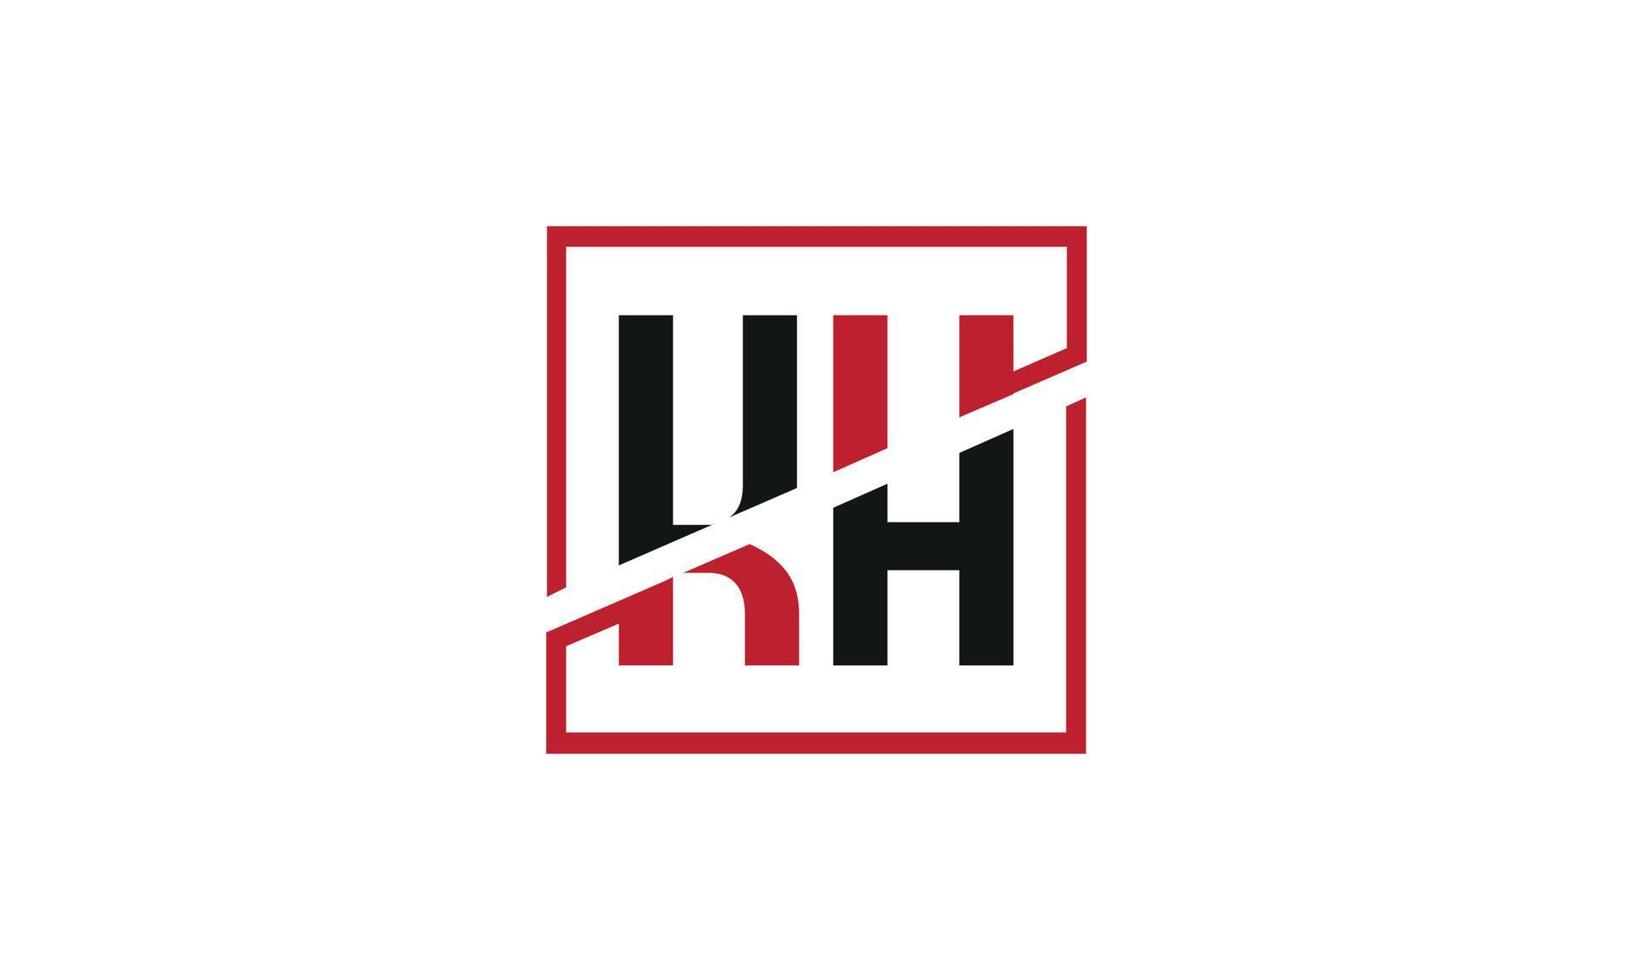 Buchstabe kh Logo pro Vektordatei pro Vektor